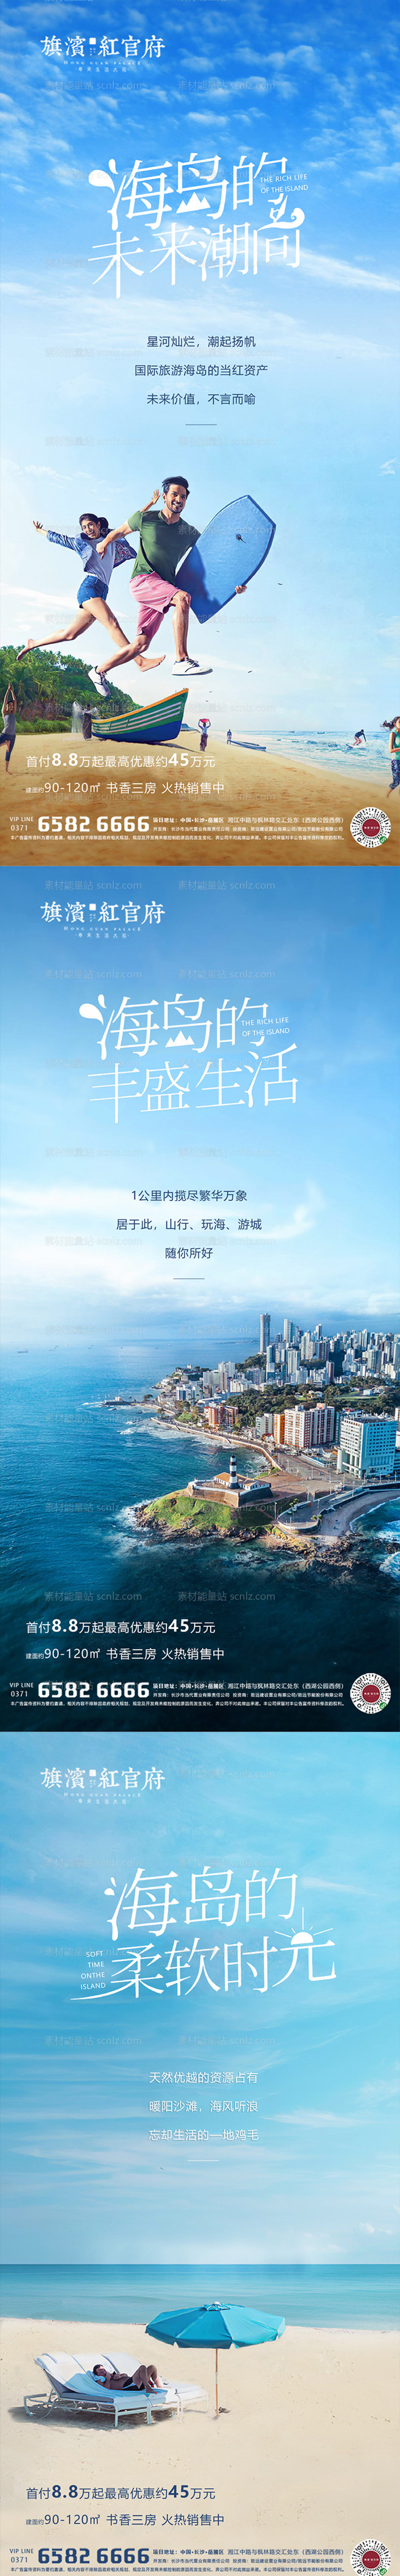 素材能量站-地产海景房海岛风景文旅系列价值点海报